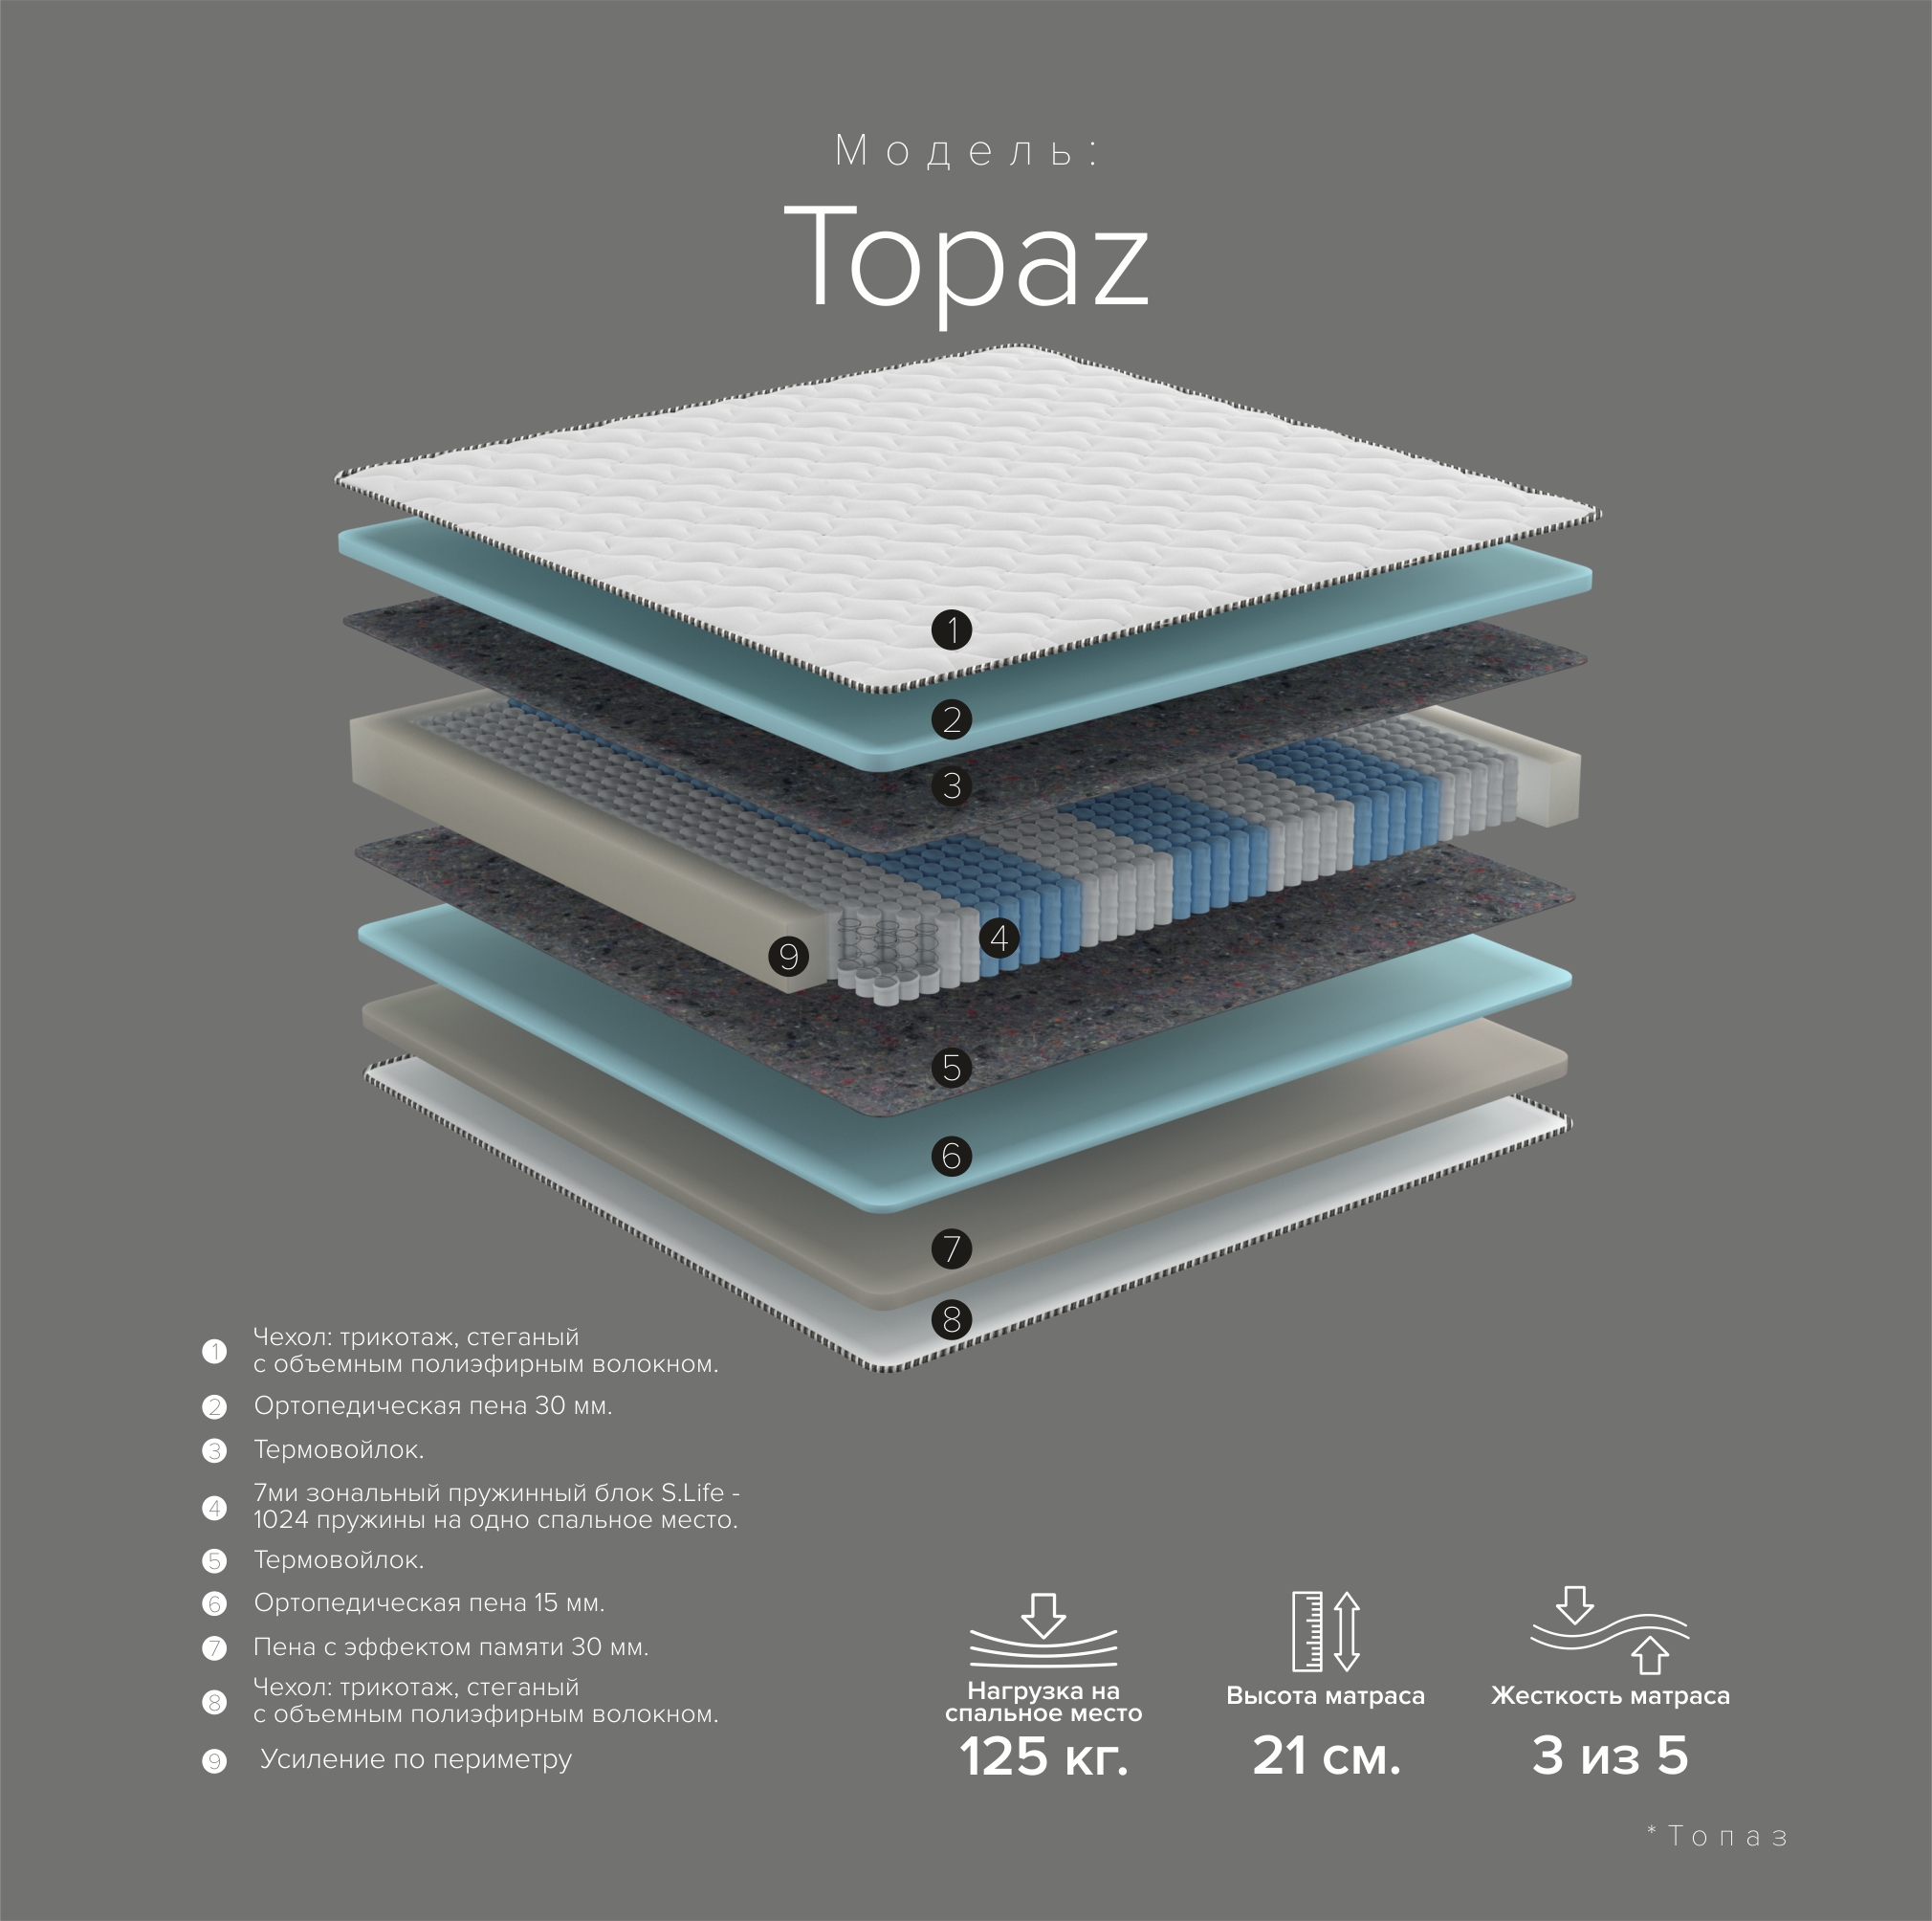 Topaz new 24 com вечер